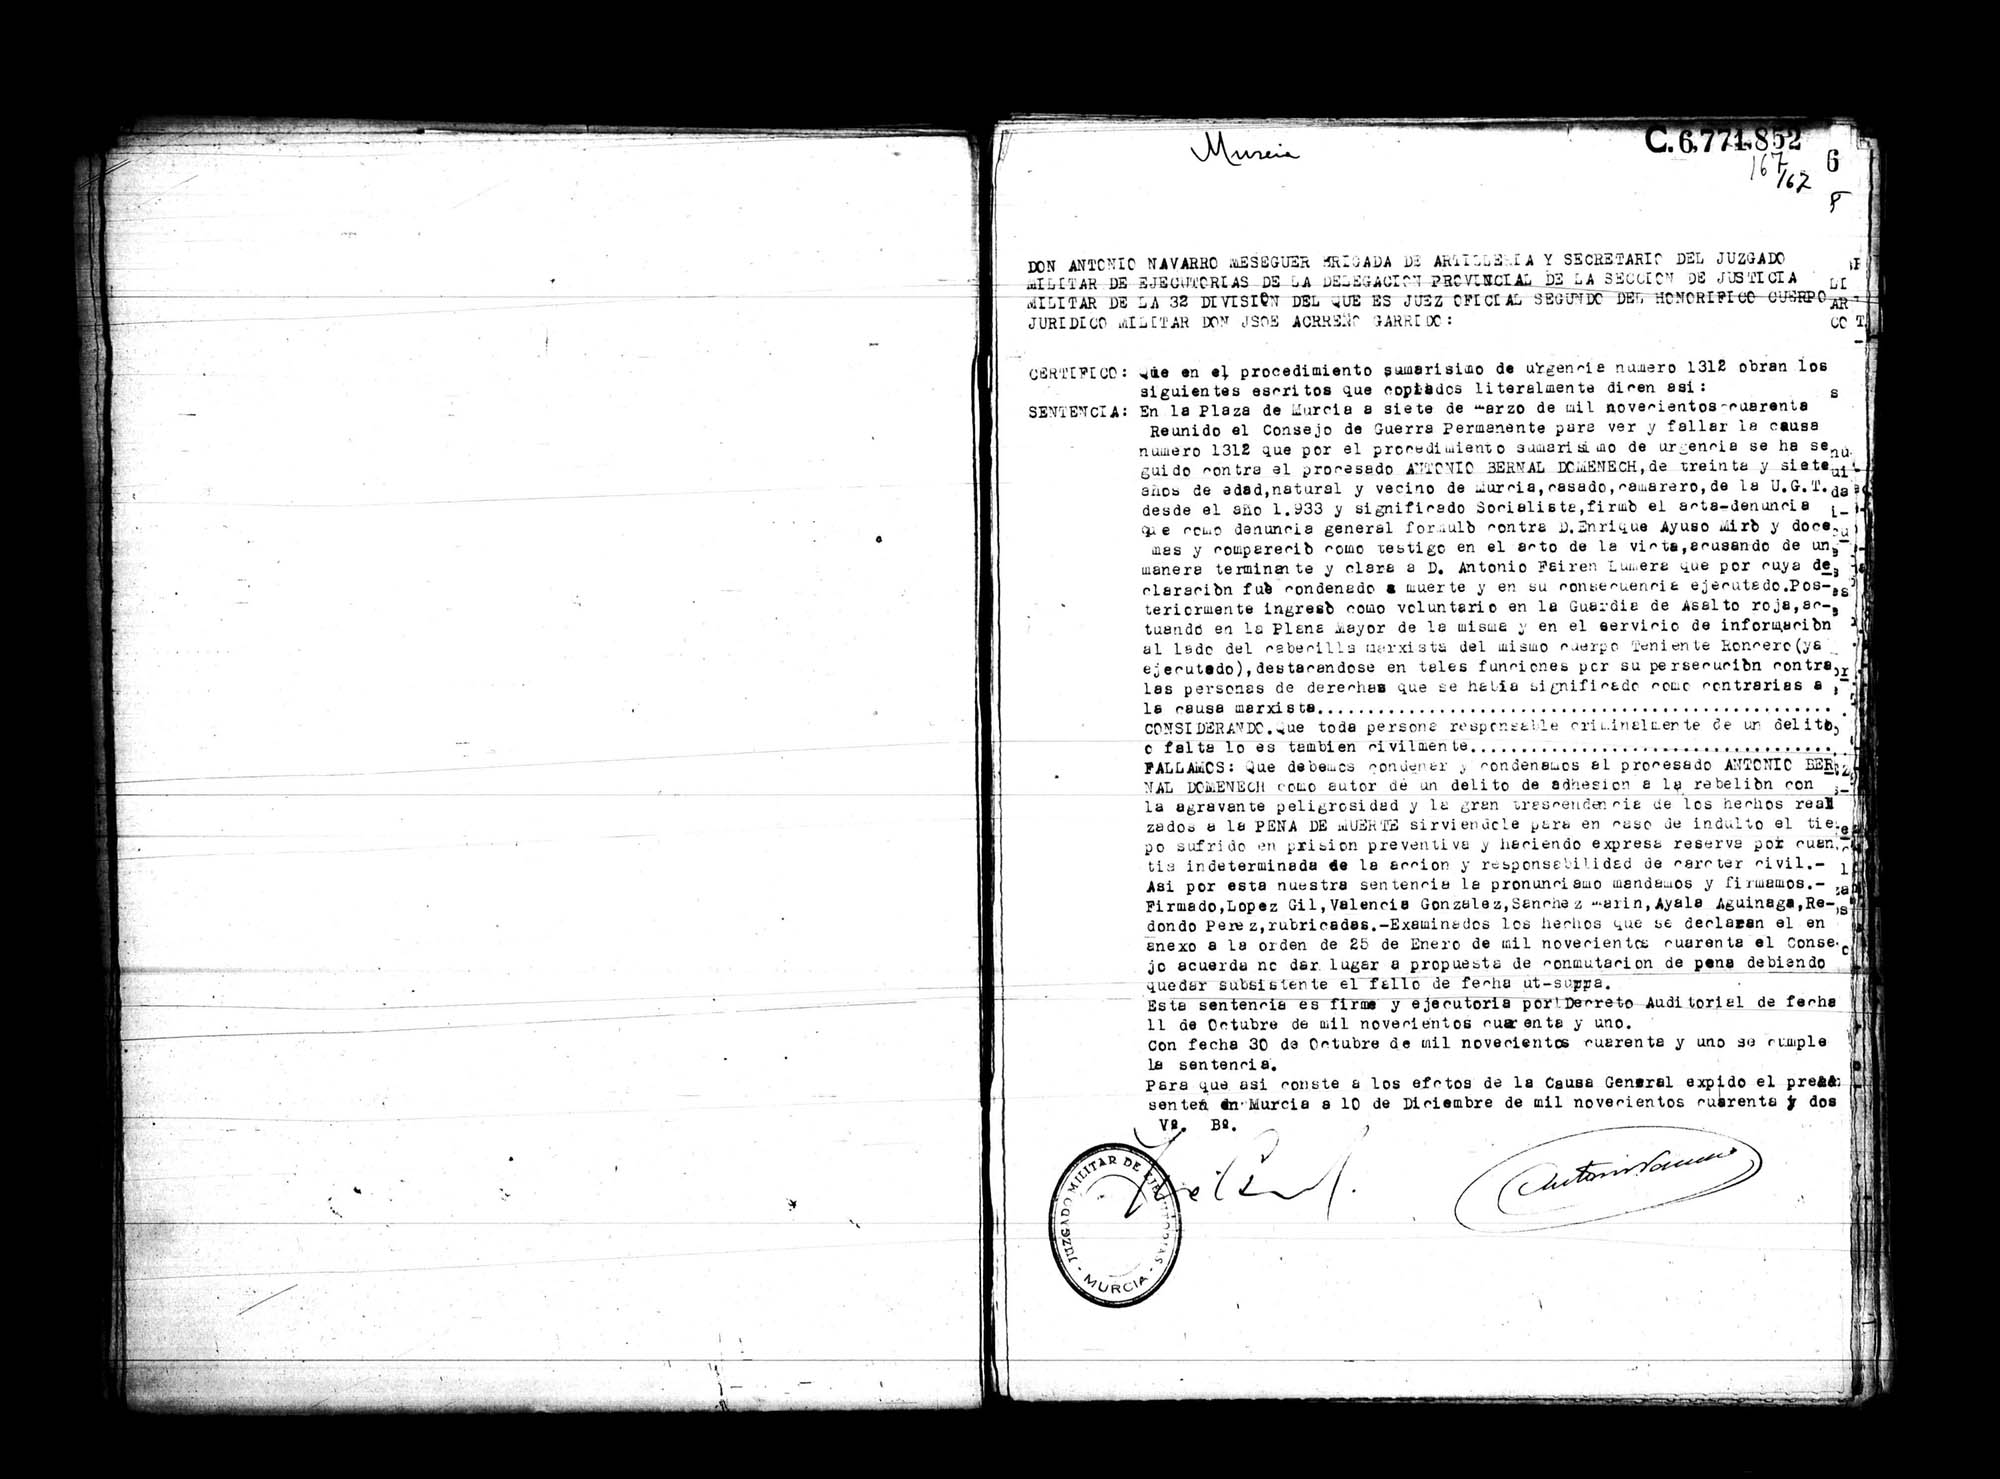 Certificado de la sentencia pronunciada contra Antonio Bernal Domenech,  causa 1312, el 7 de marzo de 1940 en Murcia.